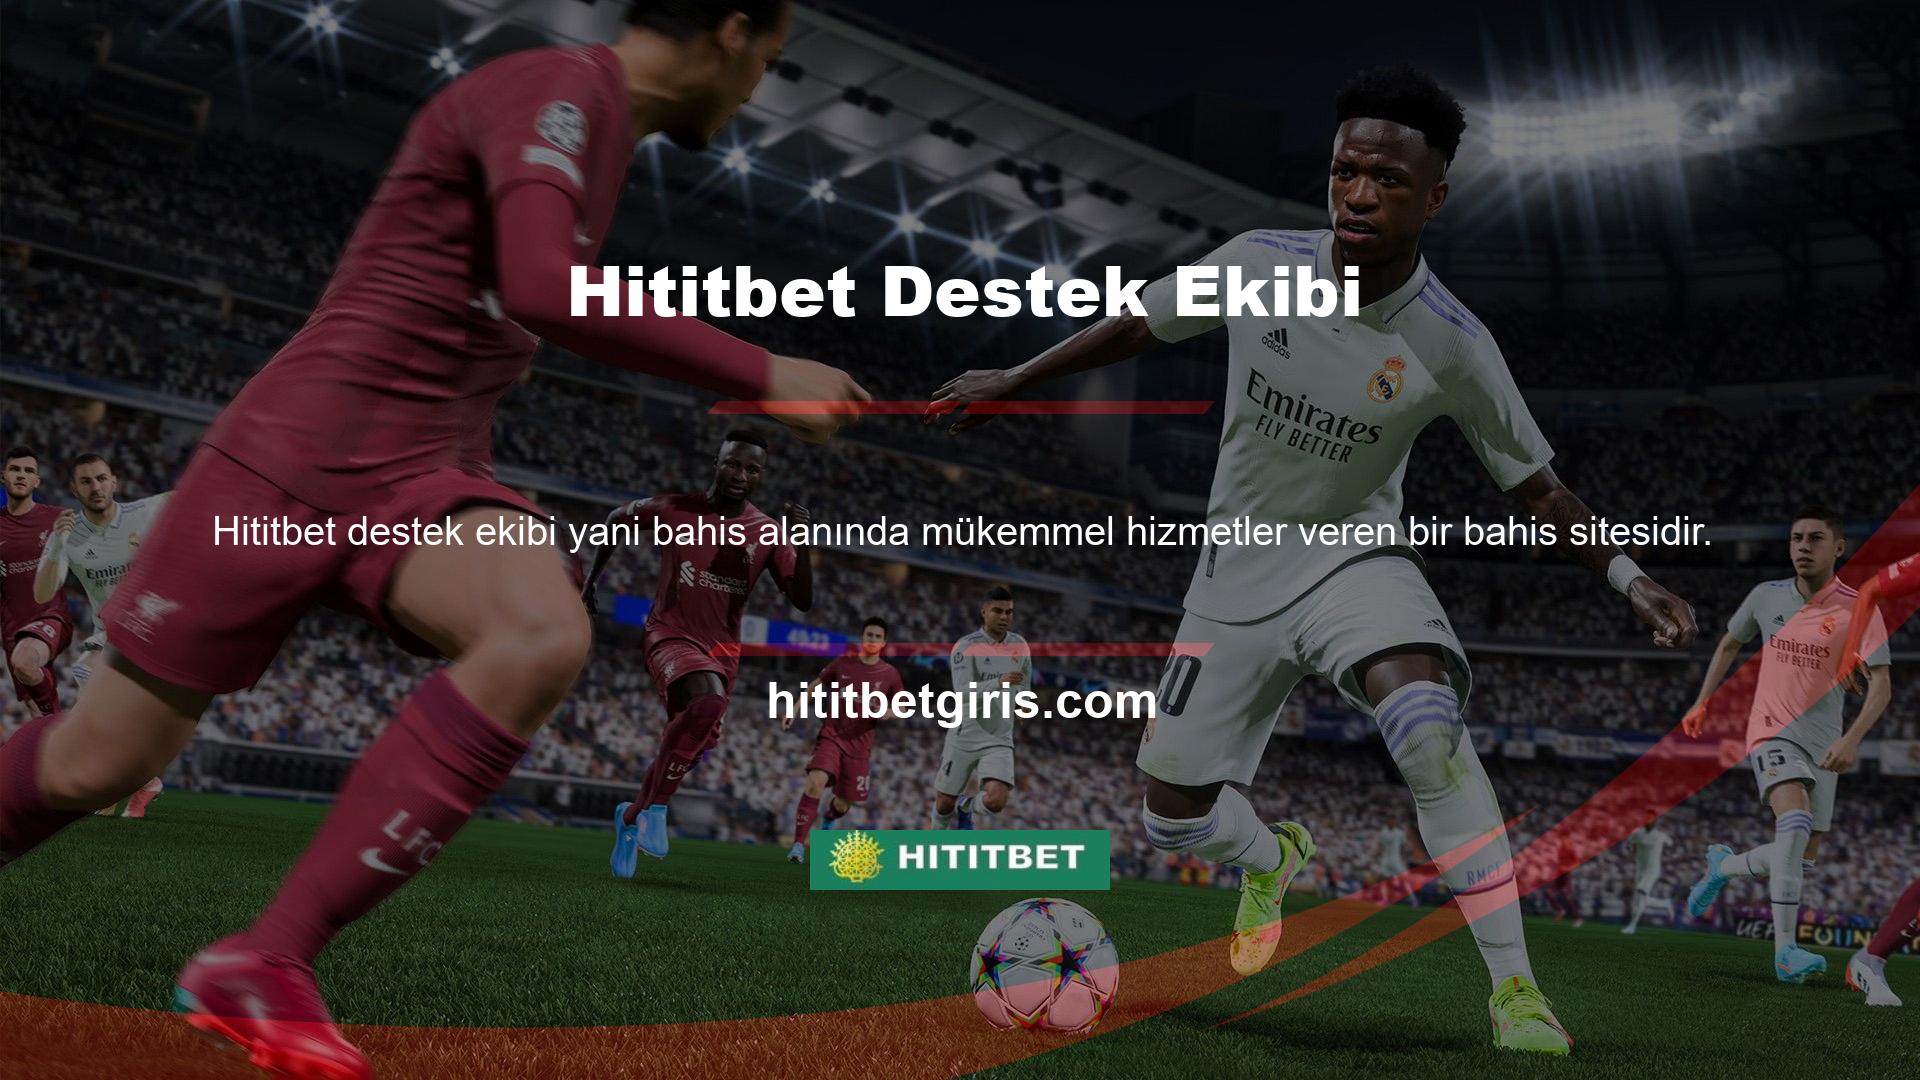 Hititbet web sitesinde birçok bölge ve tüm bölgesel oyunlar için aktif bir destek ekibi bulunmaktadır